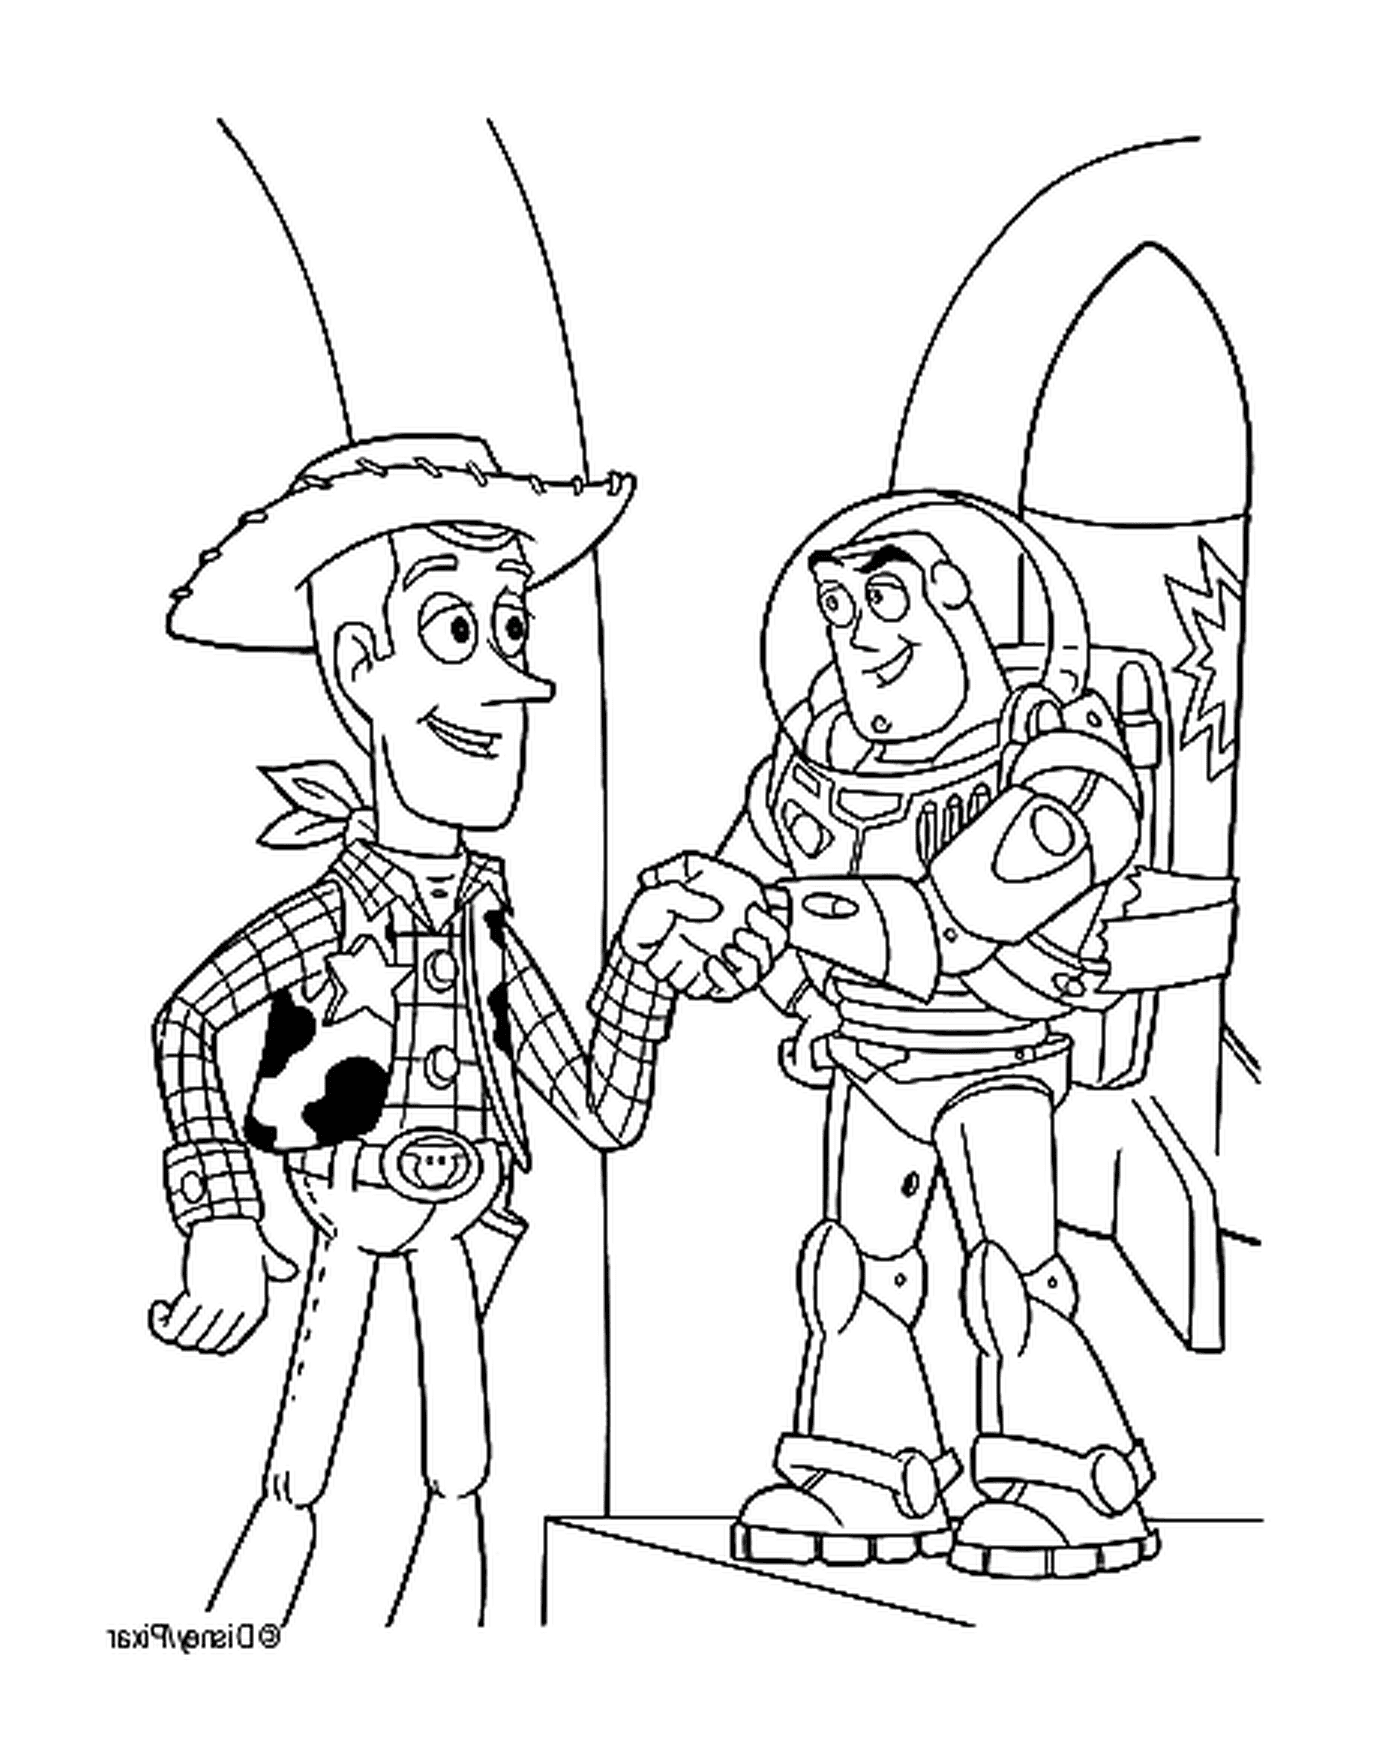   Buzz l'Éclair et Woody, partenaires légendaires 